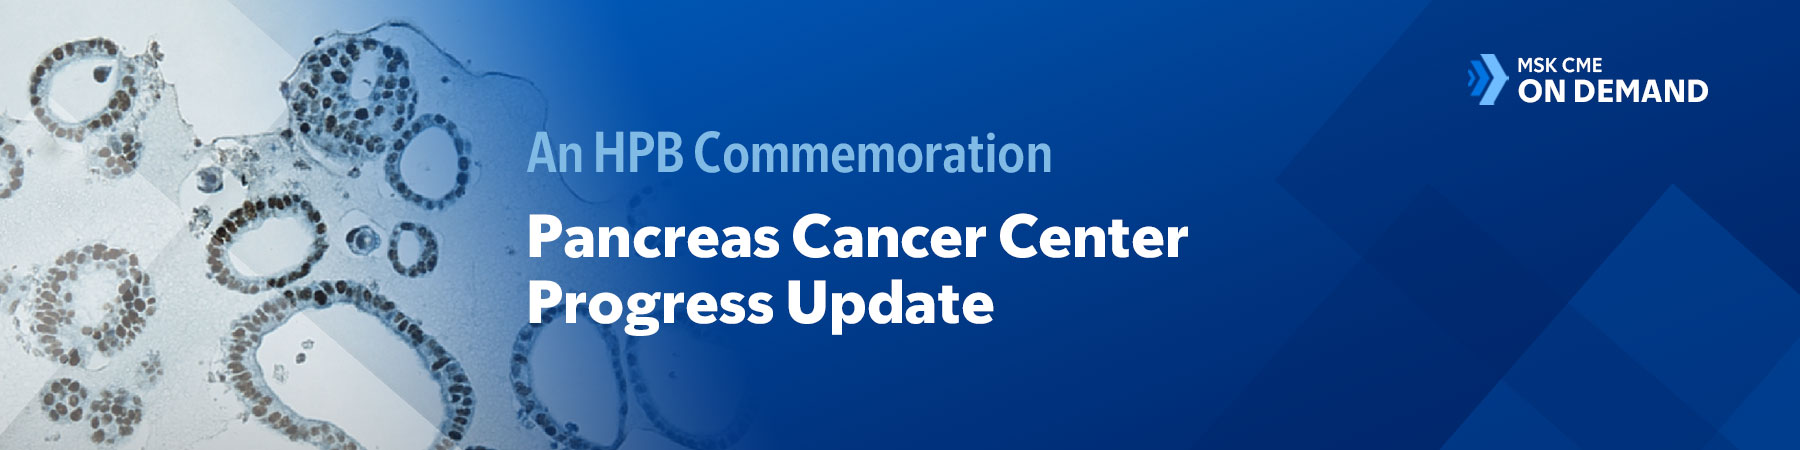 An HPB Commemoration: Pancreas Cancer Center Progress Update — On Demand Banner